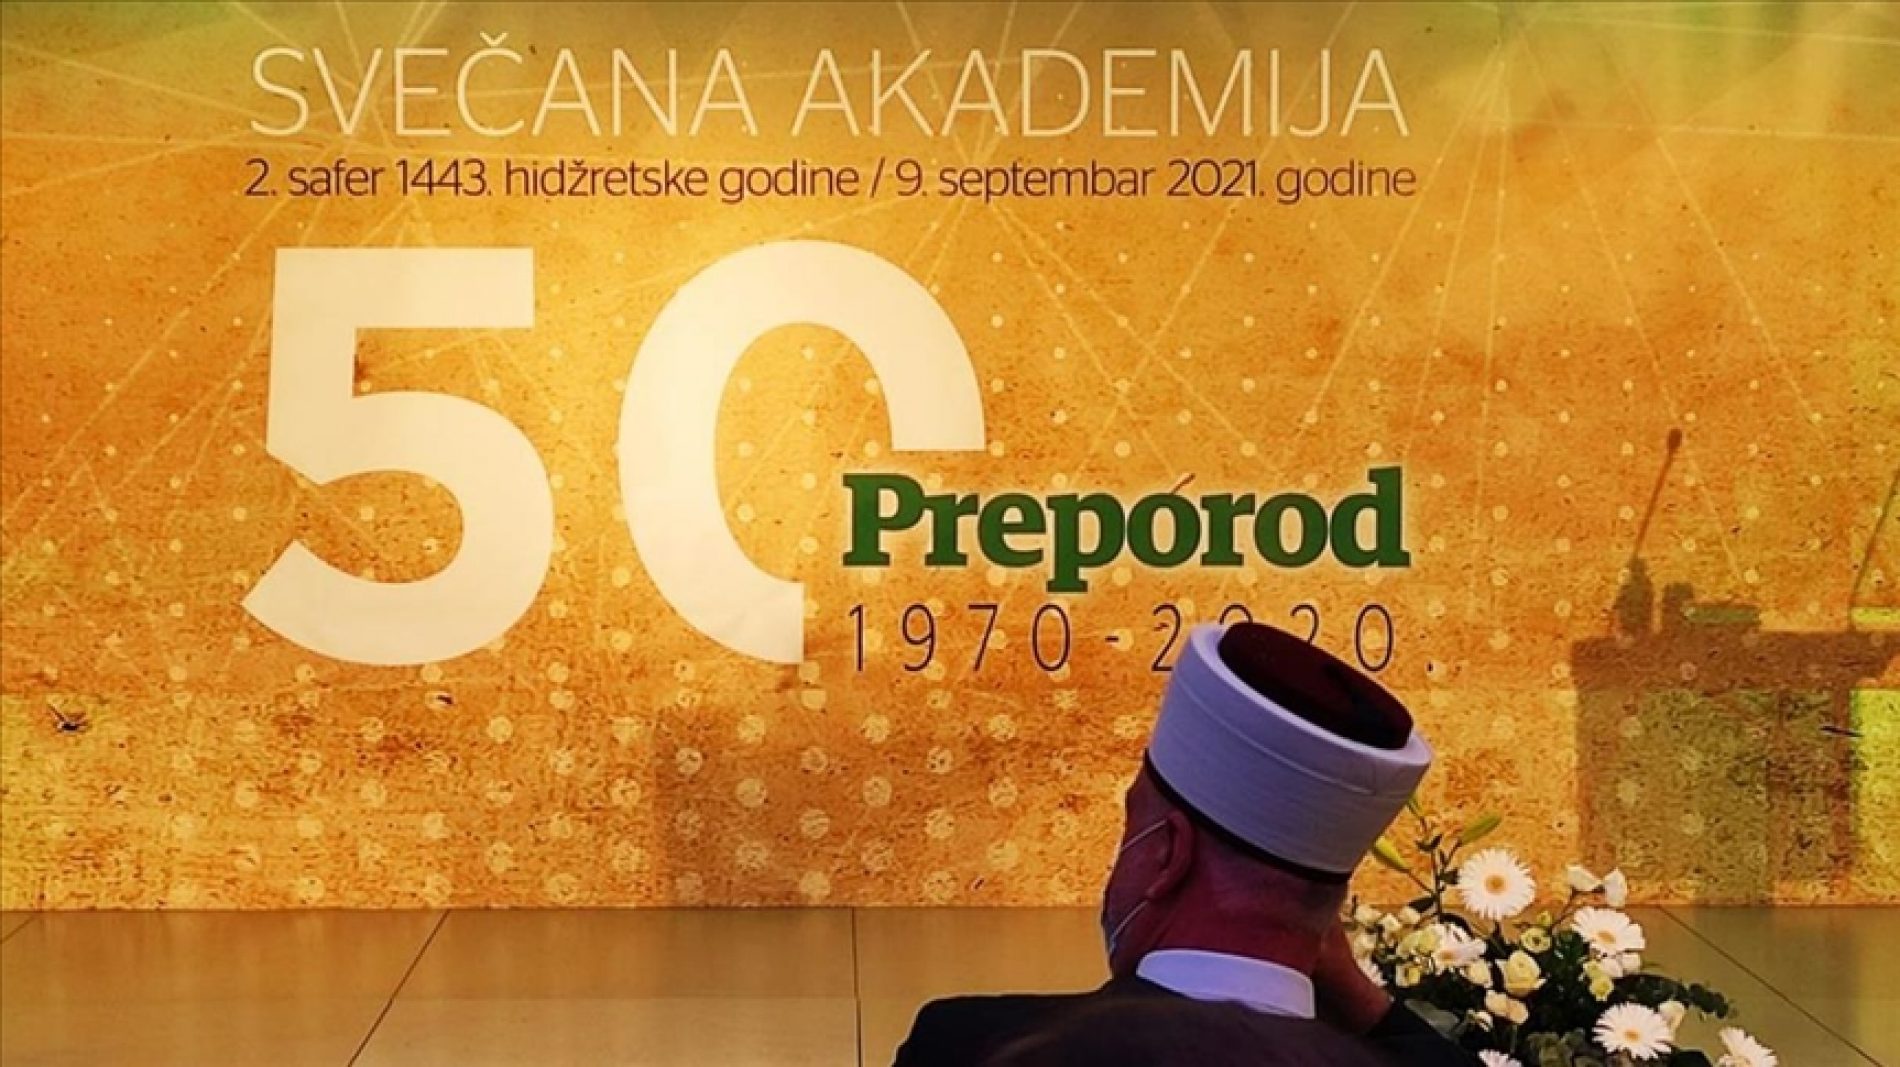 Svečana akademija povodom 50. godišnjice lista ”Preporod”